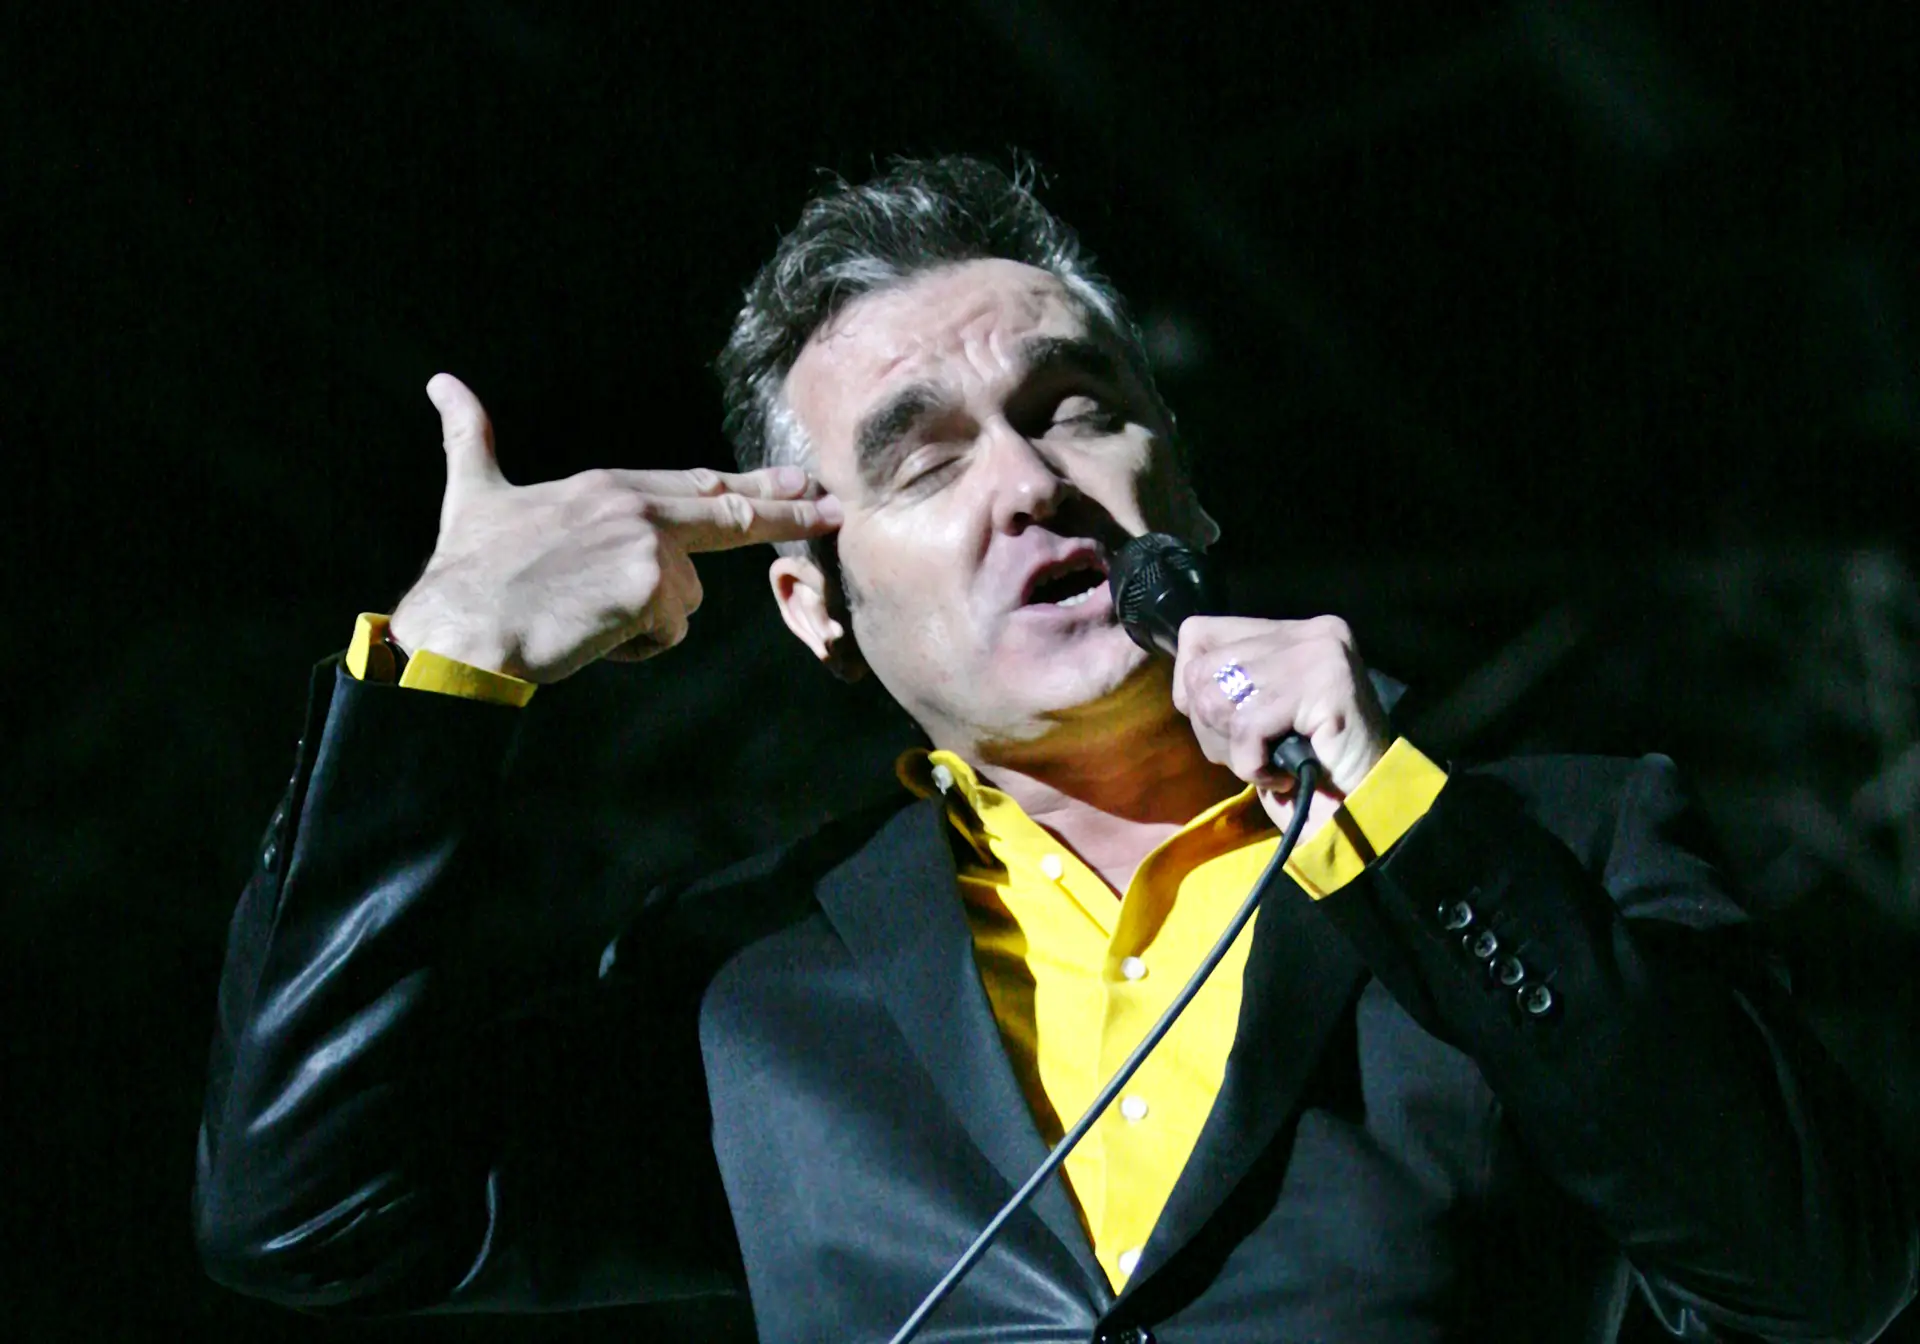 Morrissey põe crianças a gozar com os críticos de música: “Não preciso ouvir, já sei o que vou escrever”